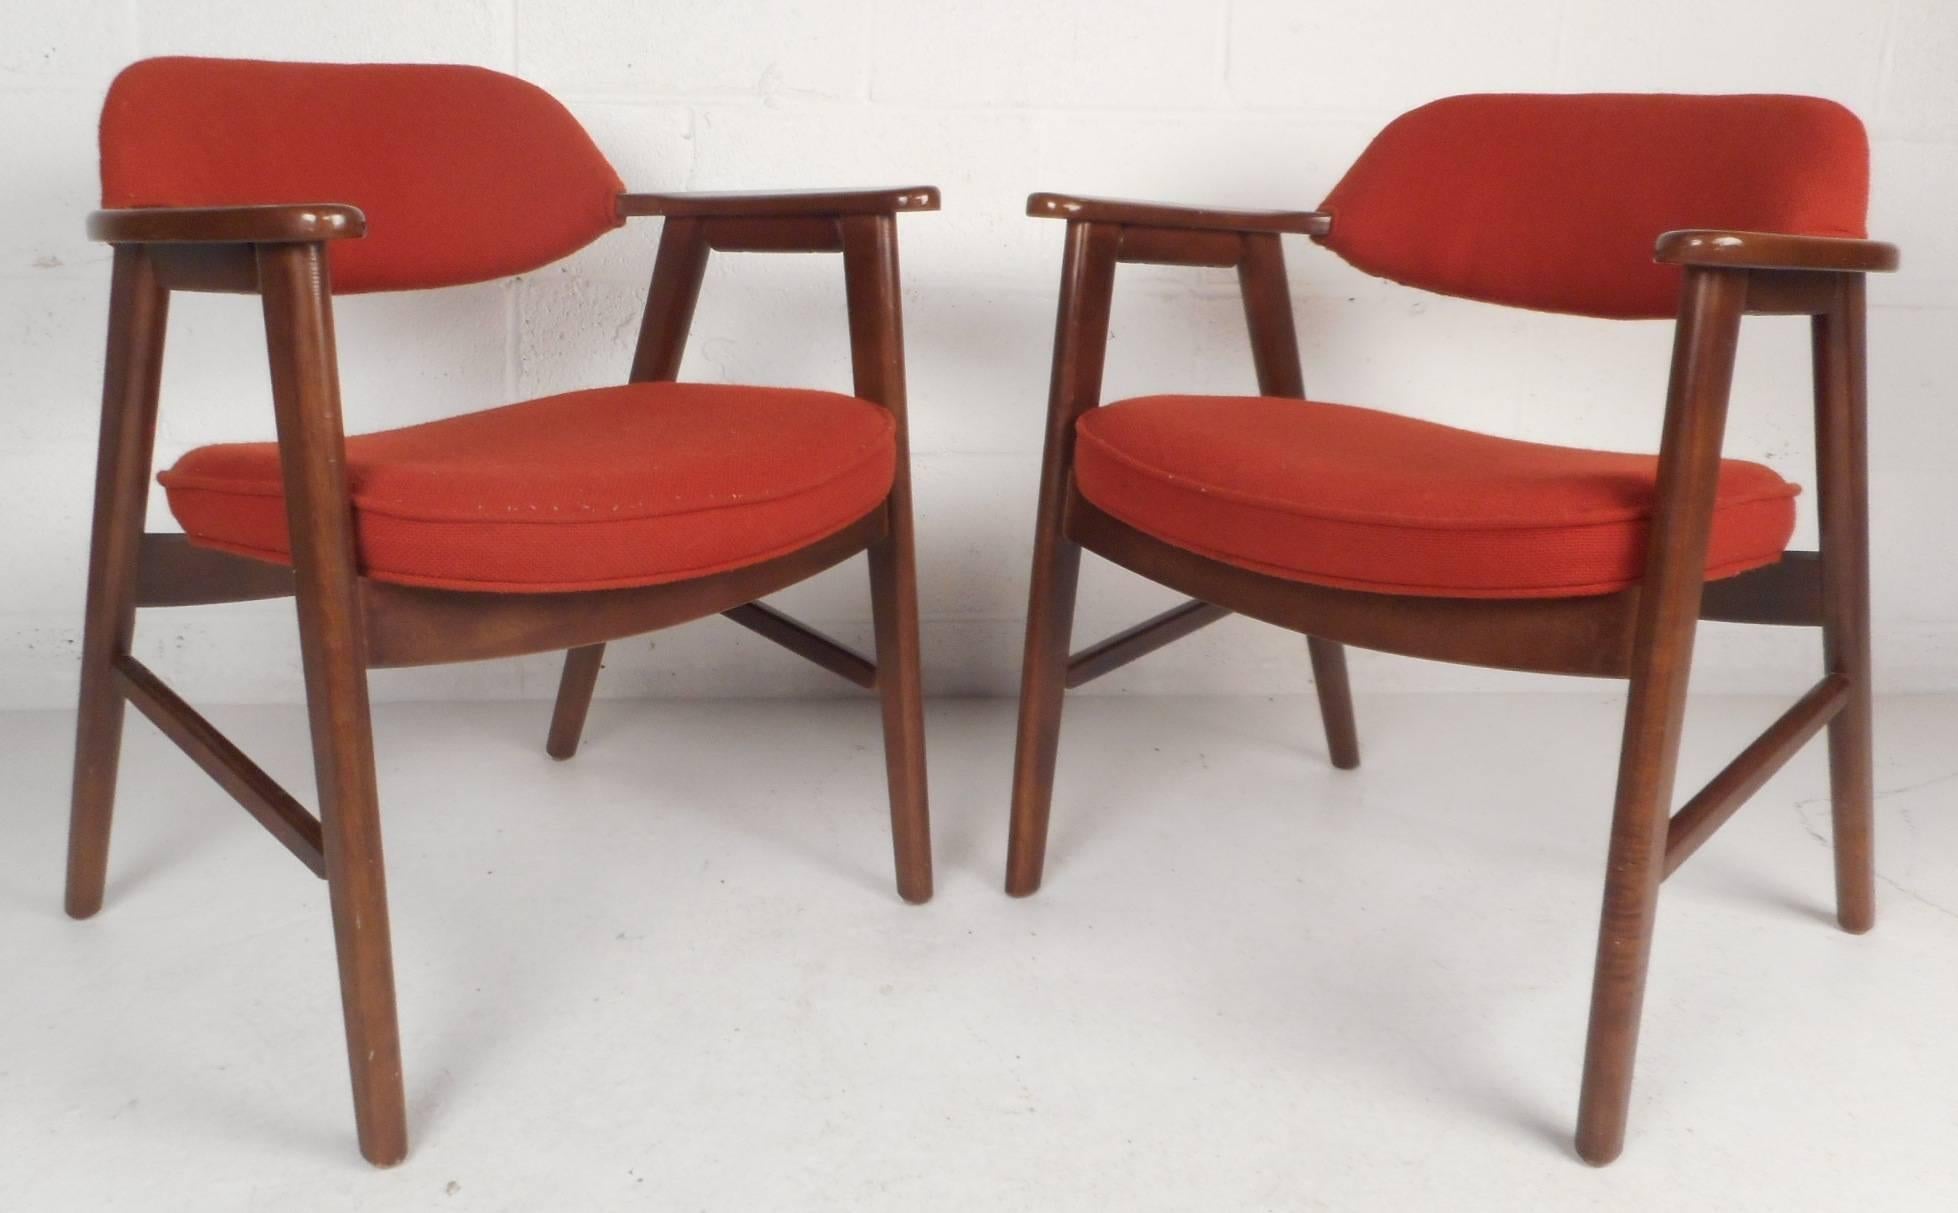 Dieses schöne Paar moderner Beistellstühle im Vintage-Stil besteht aus einem massiven Gestell aus dunklem Mahagoniholz und einer roten Polsterung aus Plüsch. Einzigartiges Design mit stilvoll ausgeschnittenen Armlehnen und abgewinkelten